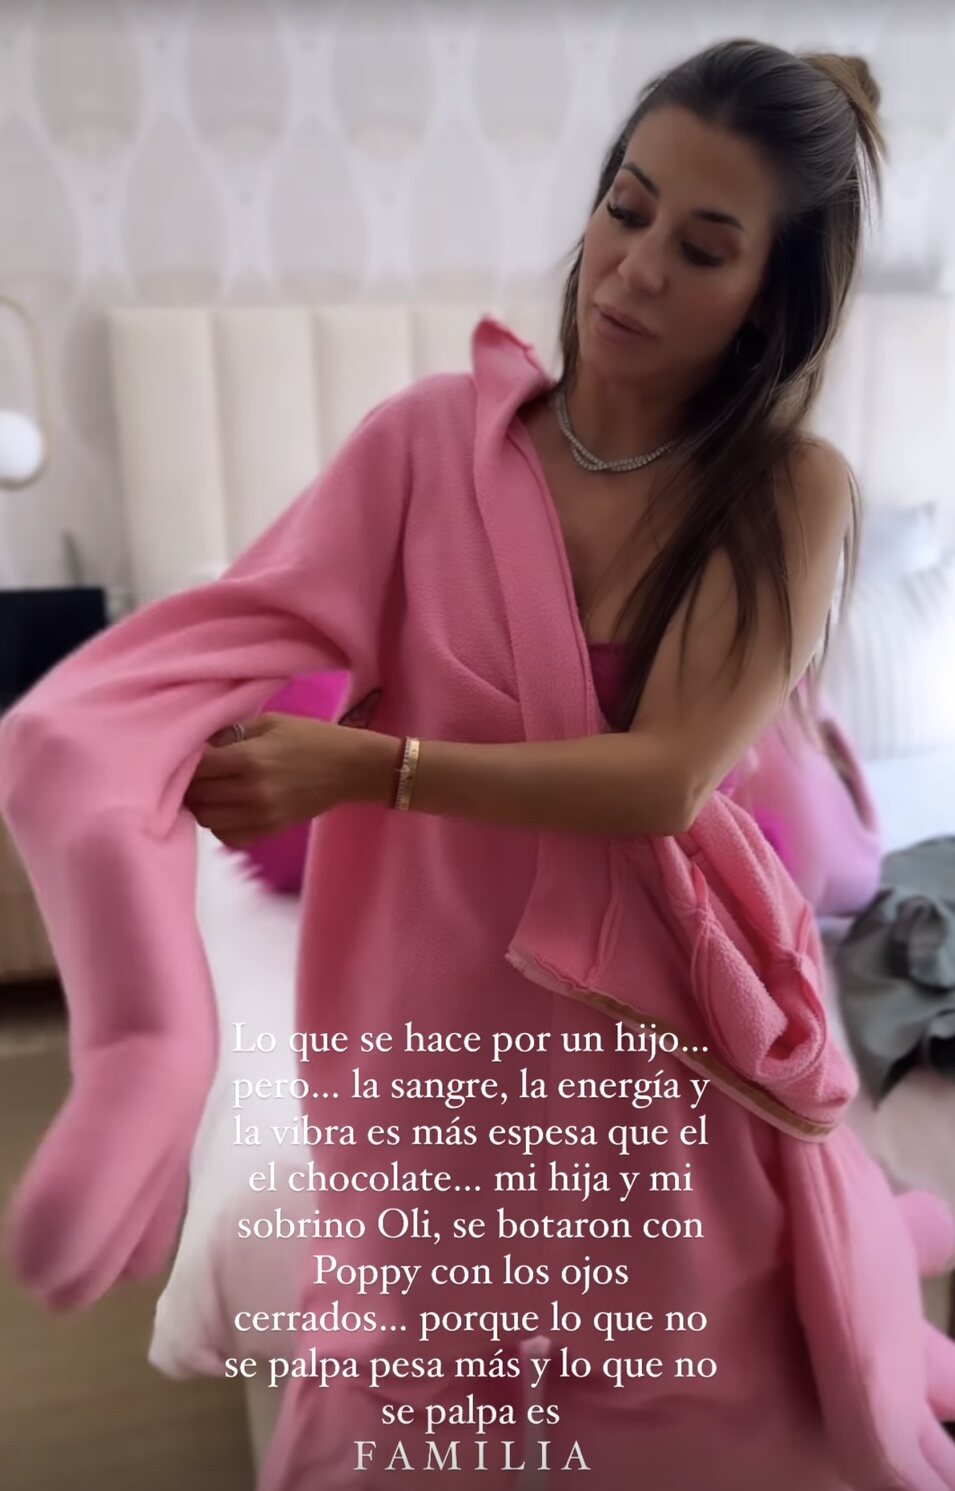 Elena Tablada disfrazándose | Instagram